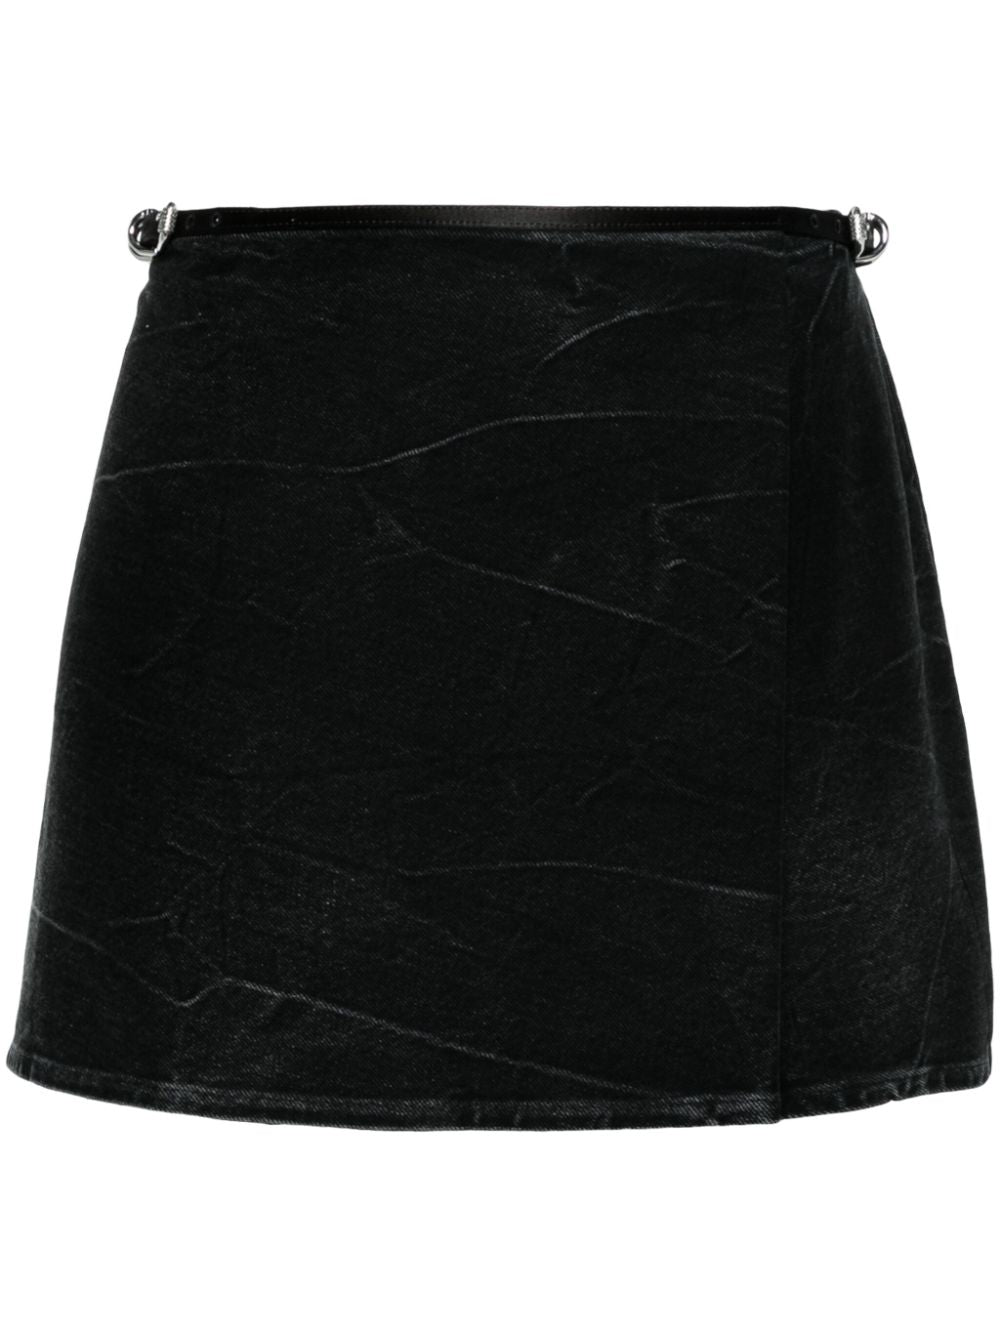 GIVENCHY Black Crinkled Cotton Denim Mini Skirt for Women